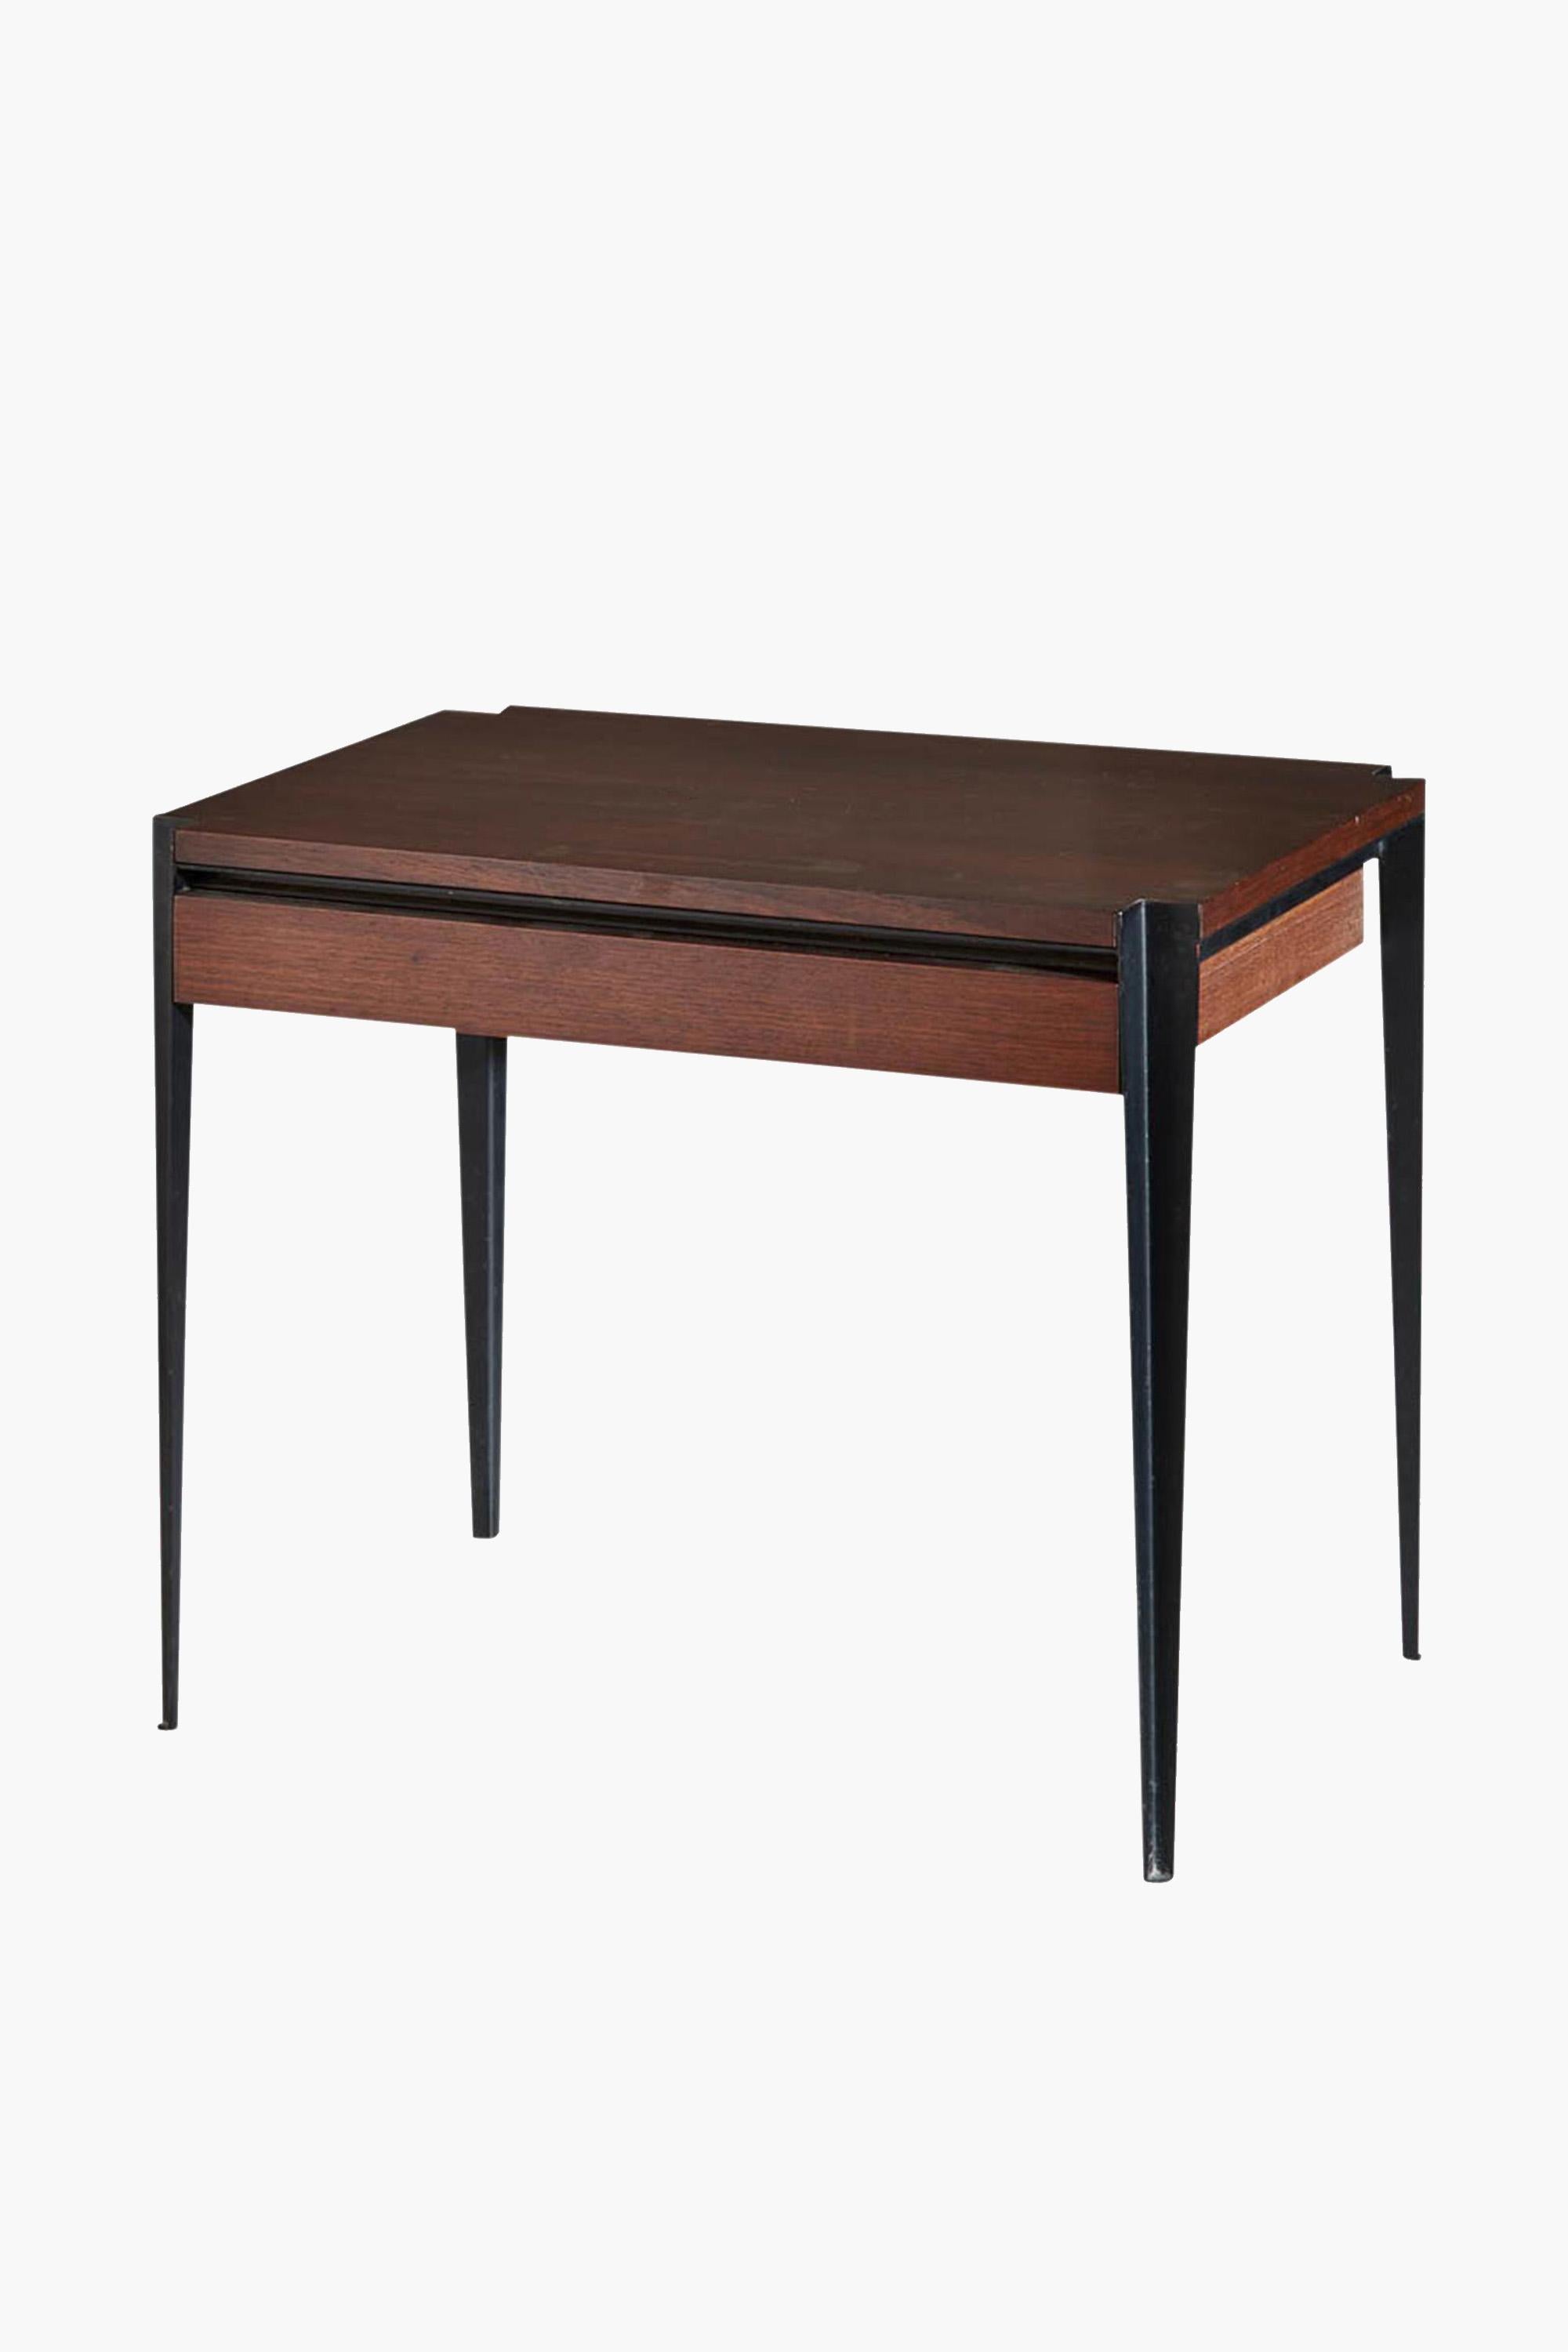 Tisch Modell T61 von Osvaldo Borsani für Tecno, 1960er Jahre

Ein von Osvaldo Borsani entworfener Couchtisch oder Beistelltisch Modell T61 aus den 1960er Jahren mit einer einzigen Schublade.

Hergestellt aus Teakholz mit schwarz lackiertem